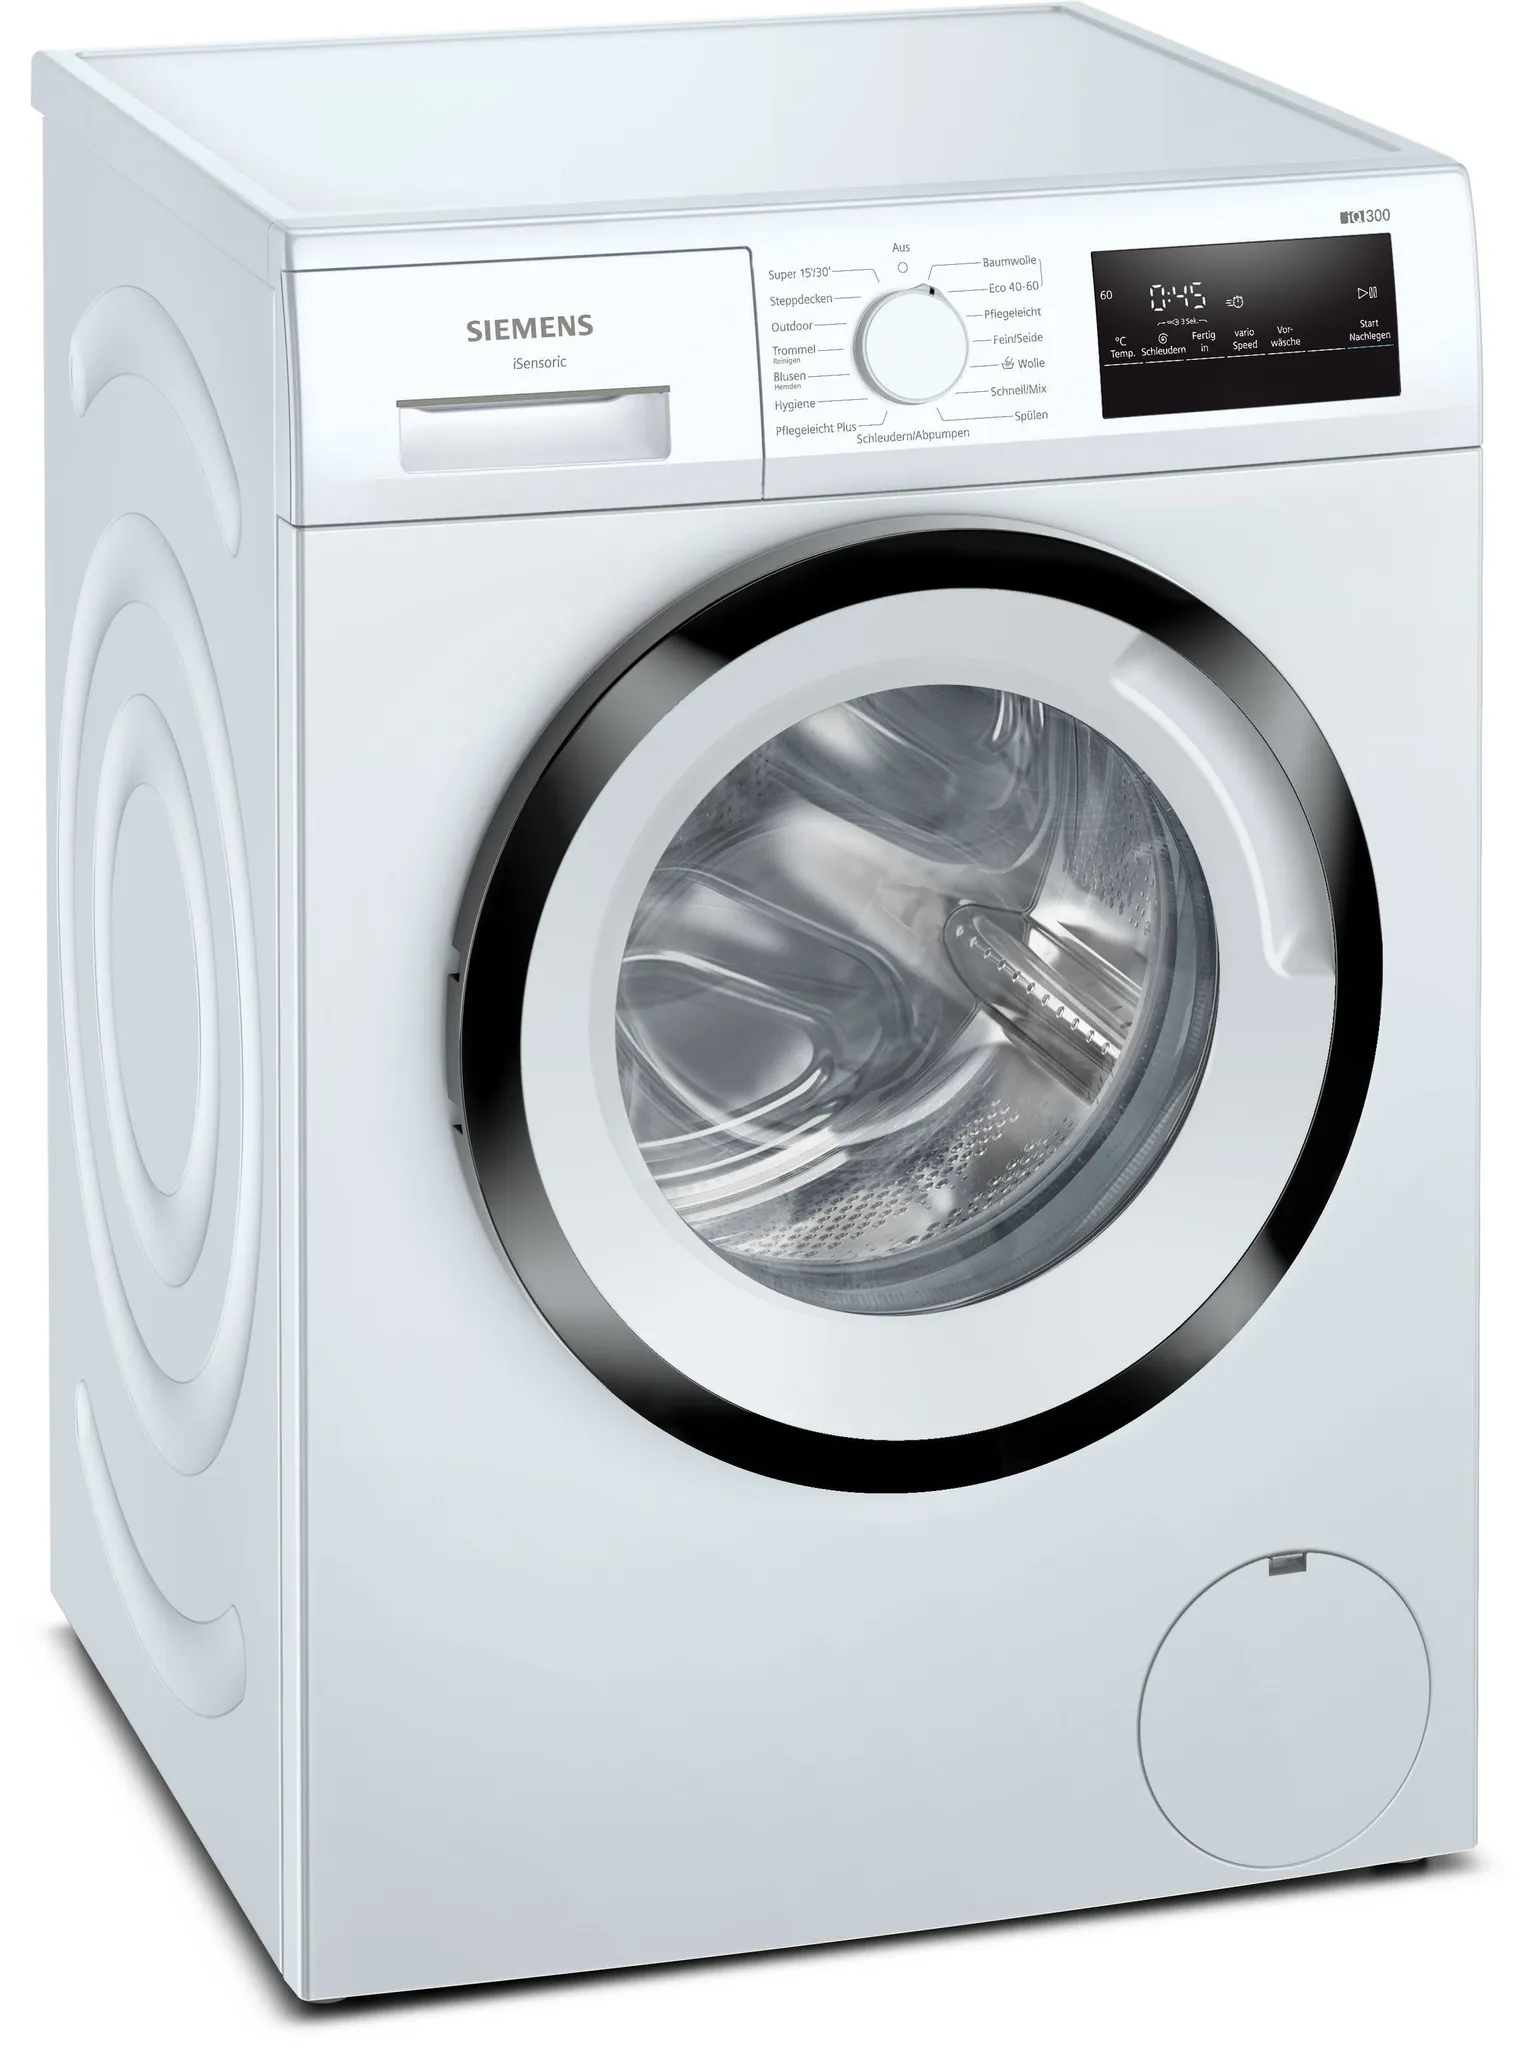 Siemens iQ300, Waschmaschine, WM14N123 kg, 1400 7 U/min. Frontlader